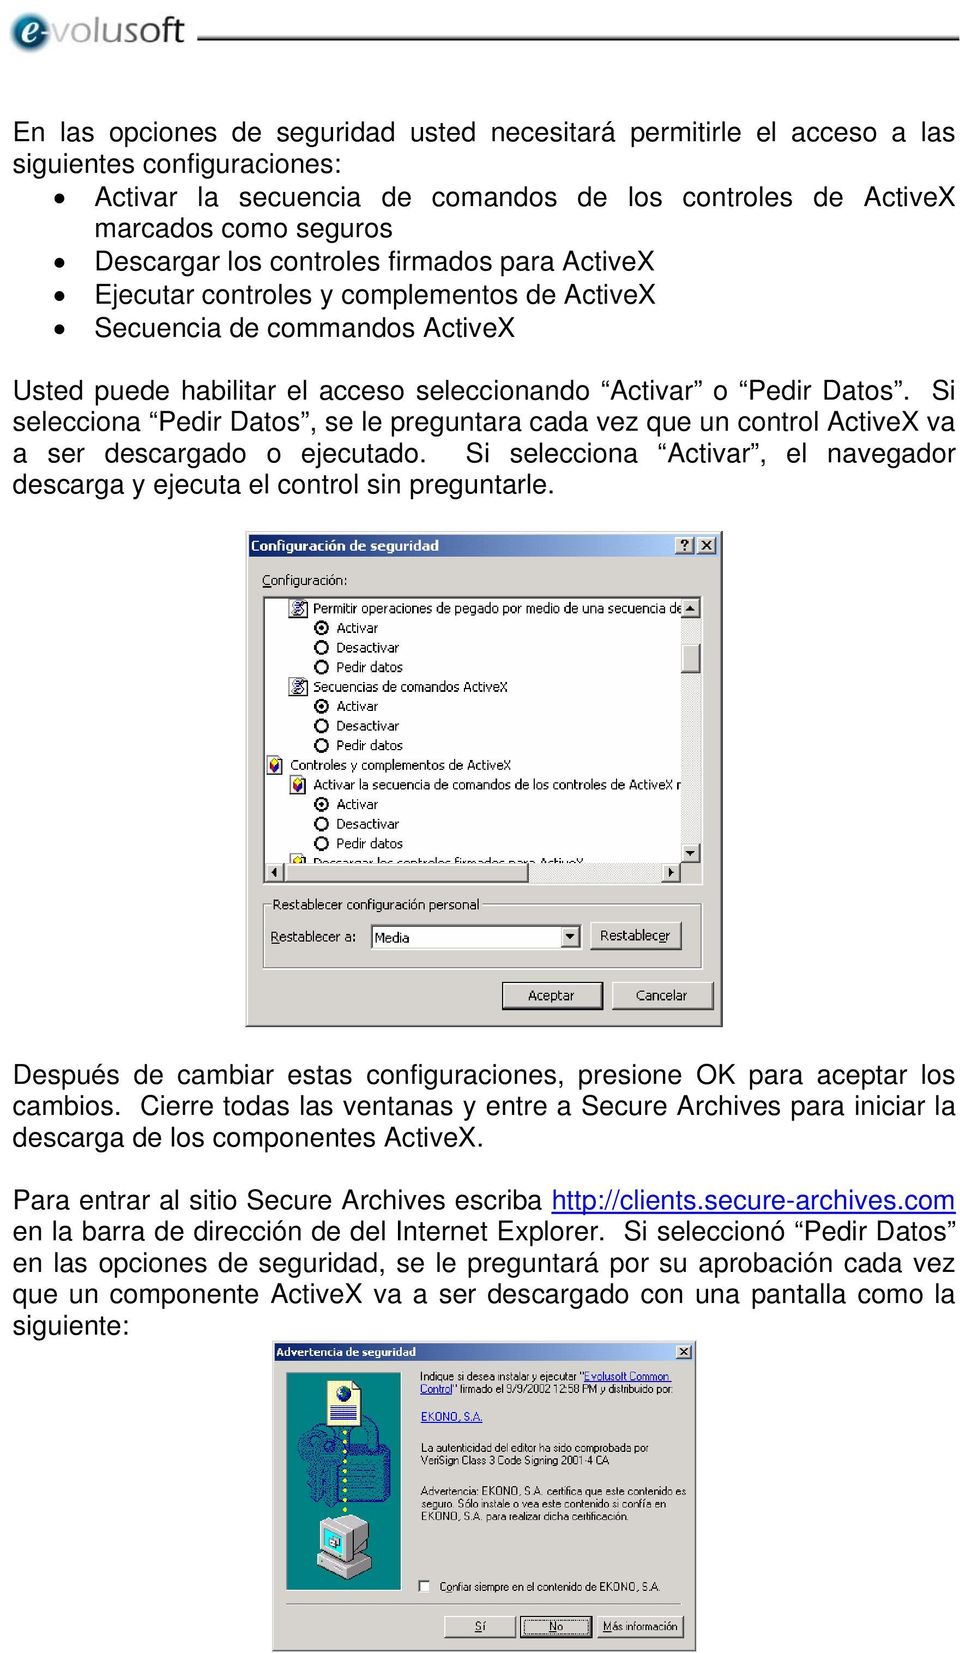 Si selecciona Pedir Datos, se le preguntara cada vez que un control ActiveX va a ser descargado o ejecutado. Si selecciona Activar, el navegador descarga y ejecuta el control sin preguntarle.